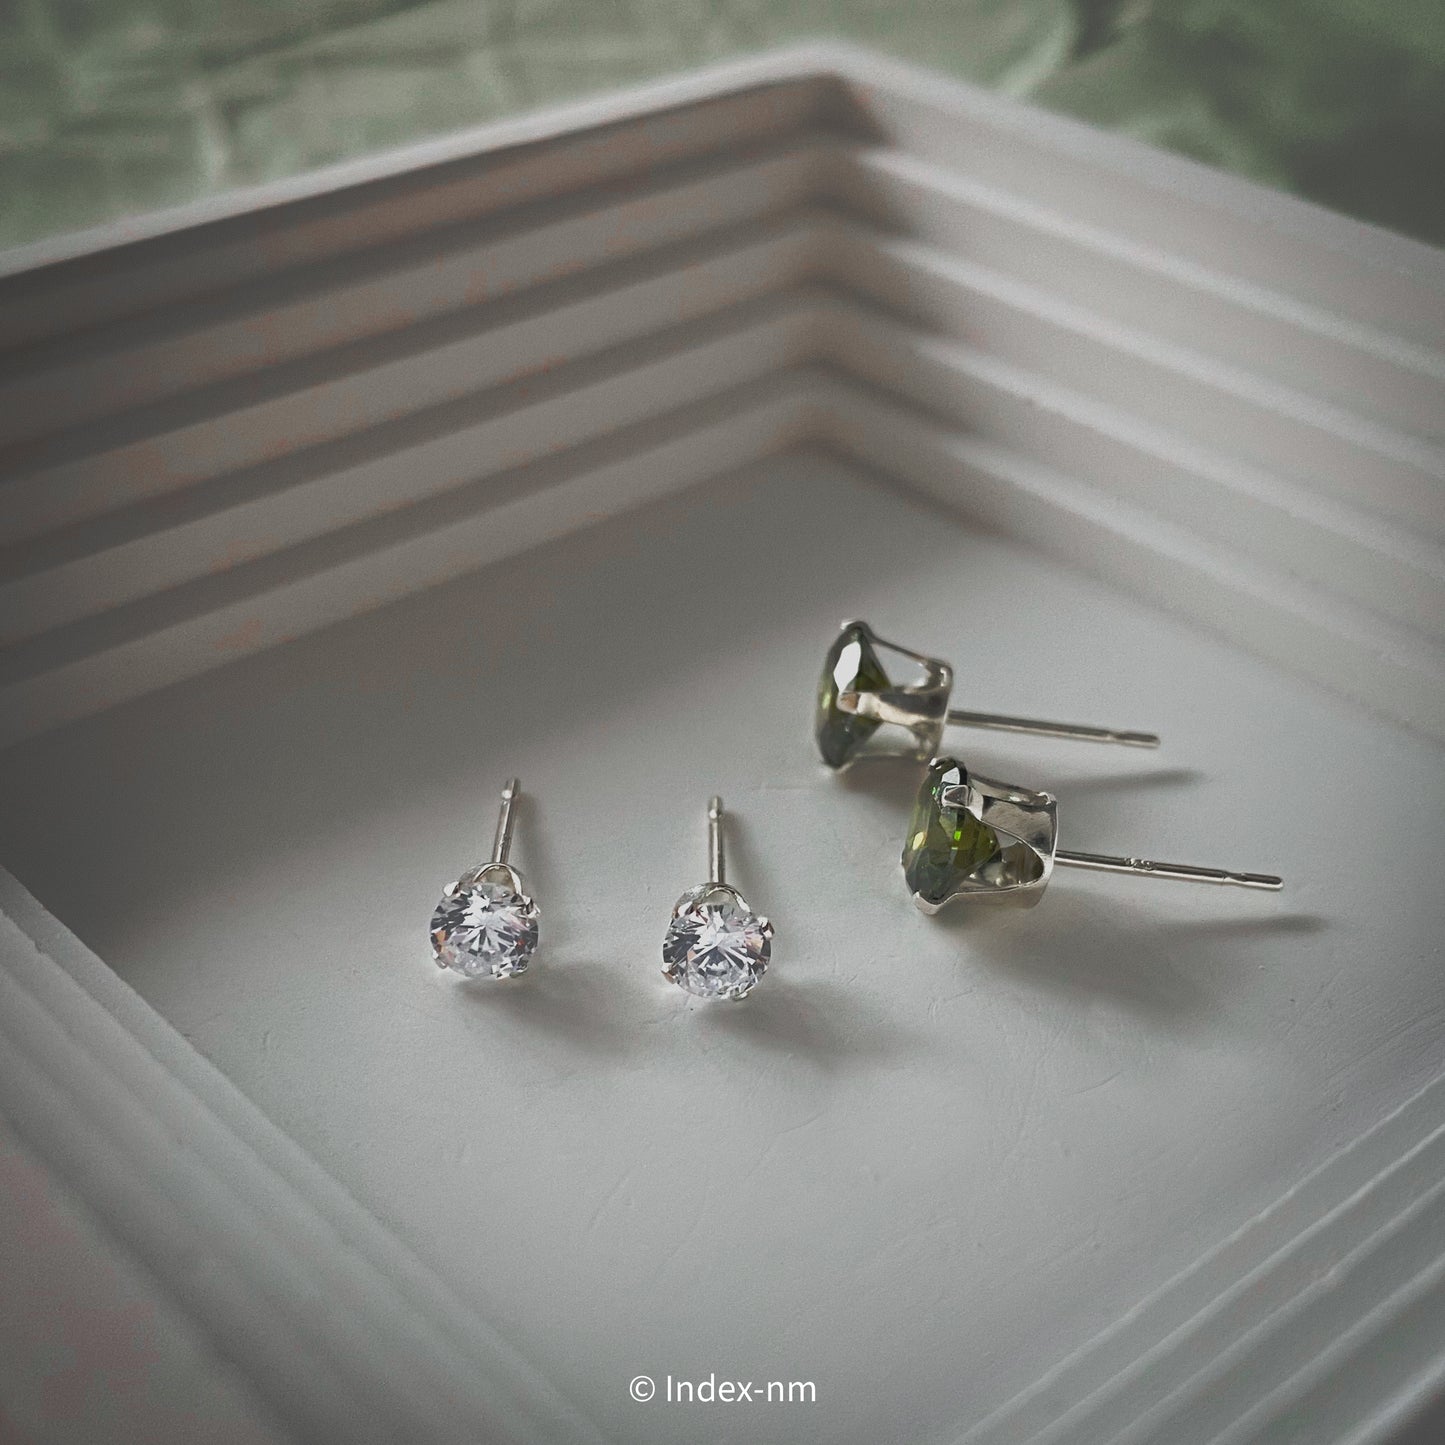 正方形、鋯石、全純銀、耳環、橄欖綠、白色、Accessories